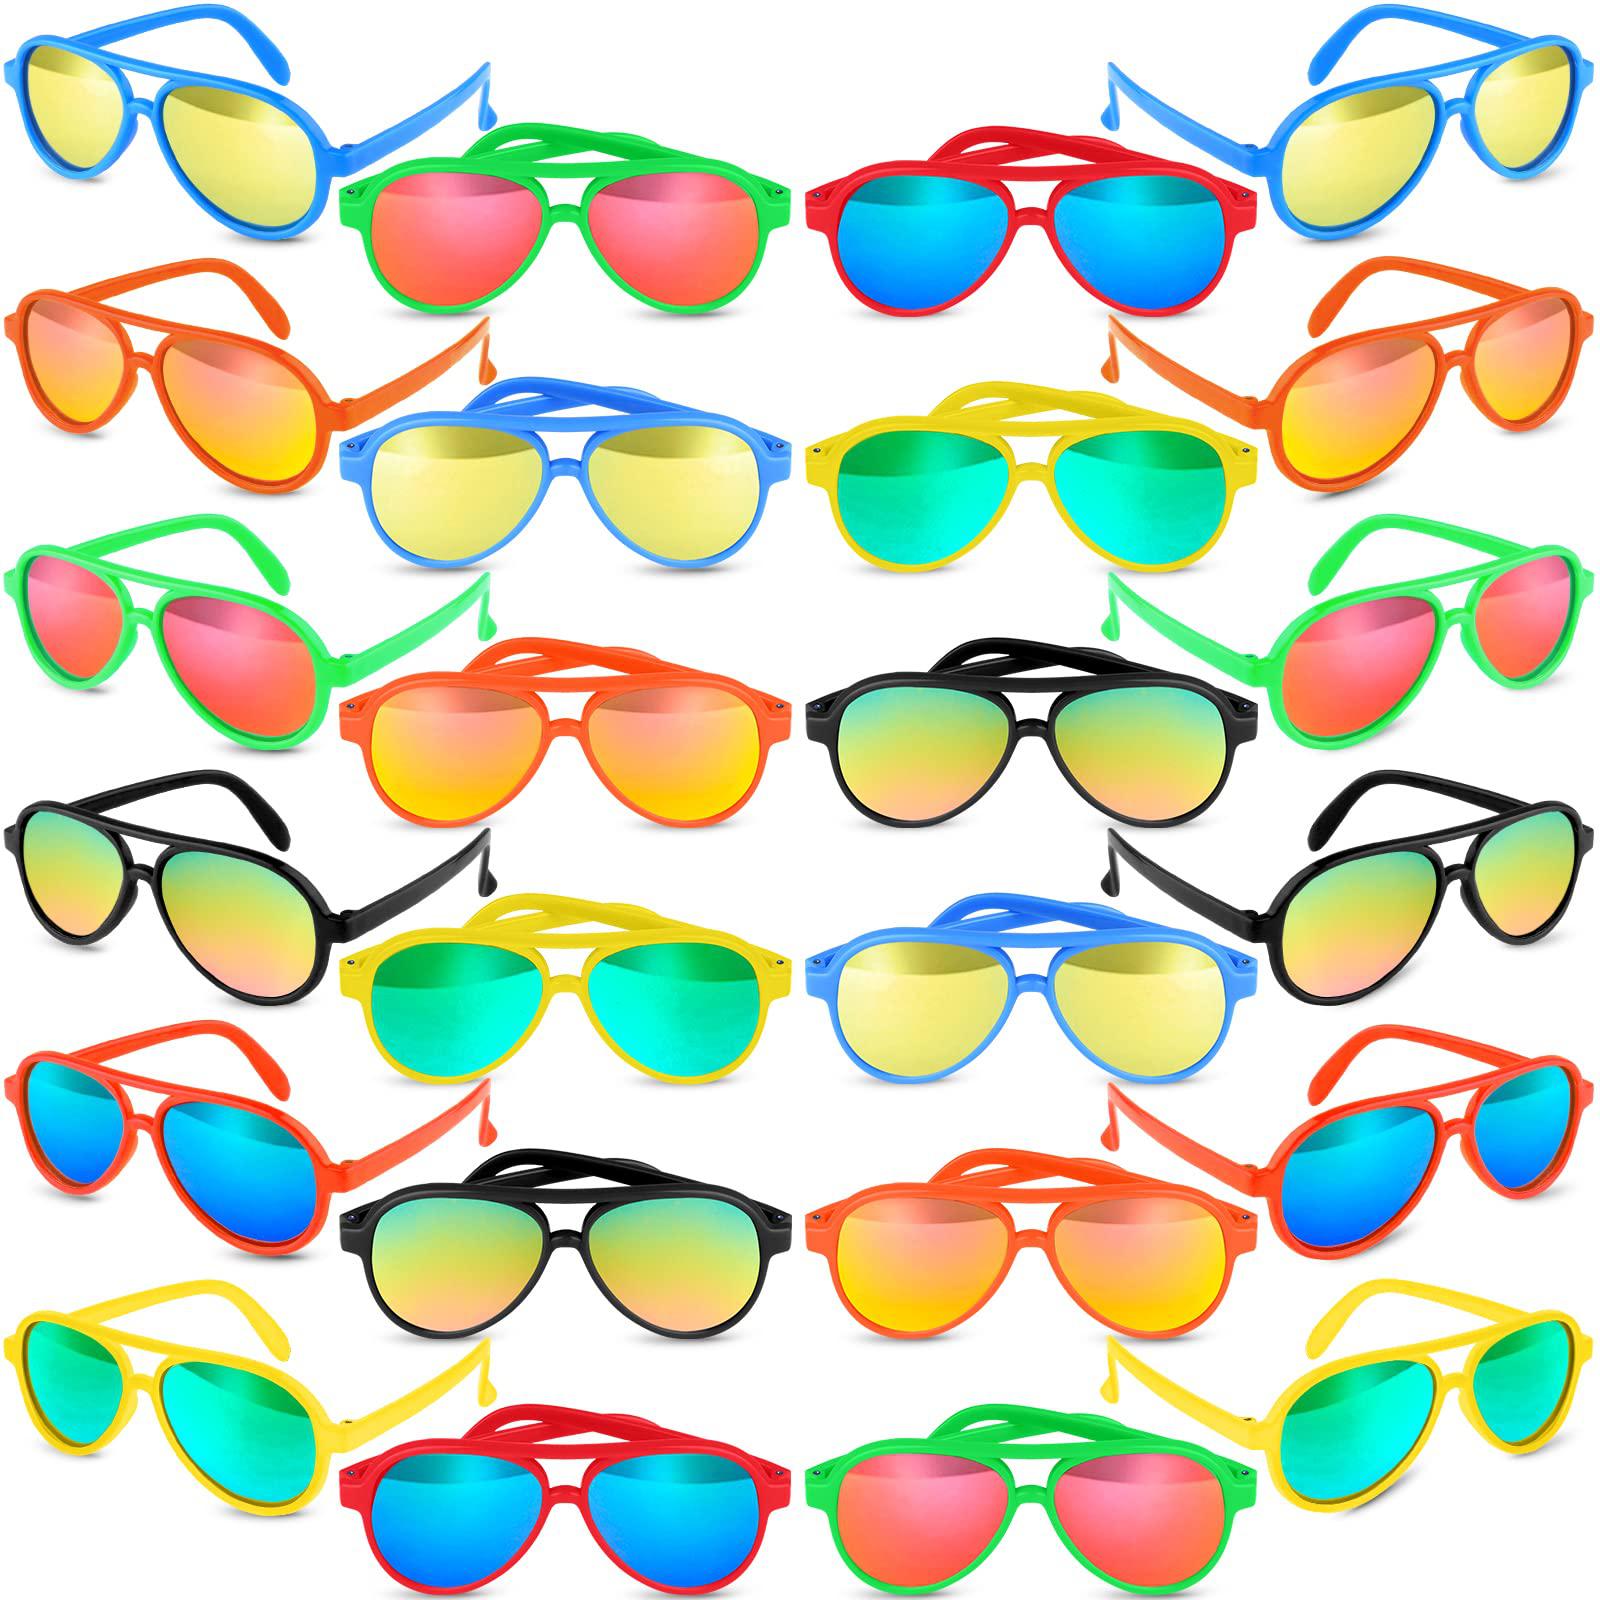 tepsmigo kids aviator sunglasses party favors - 24 pack kids sunglasses bulk for boys girls - party favor sunglasses for kids